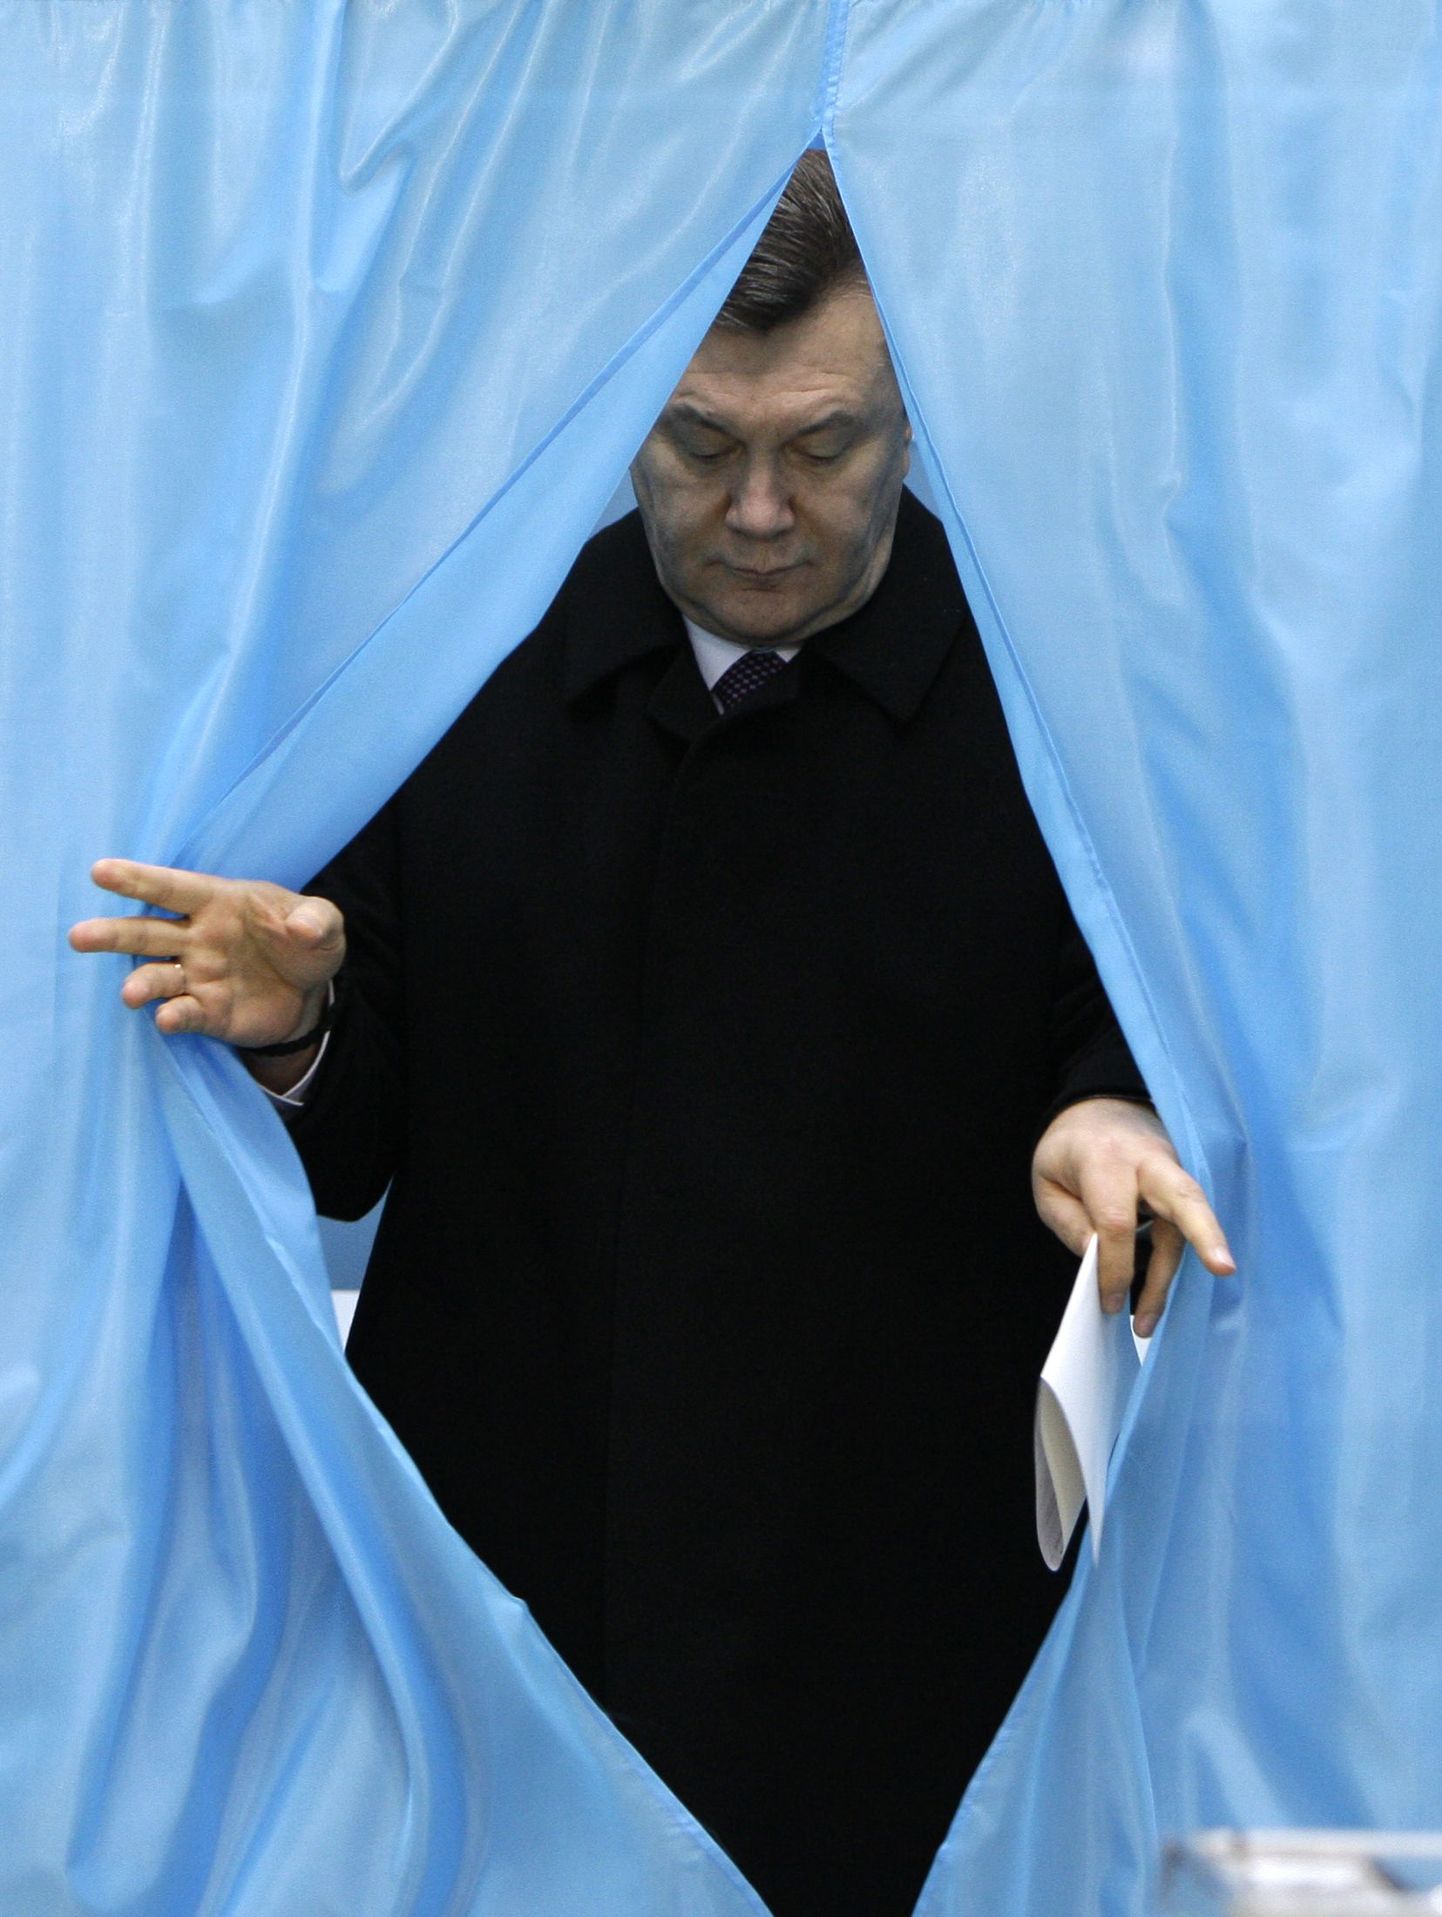 Kiievi jaoskonna hääletuskabiinist väljub opositsiooni liider Viktor Janukovitš.